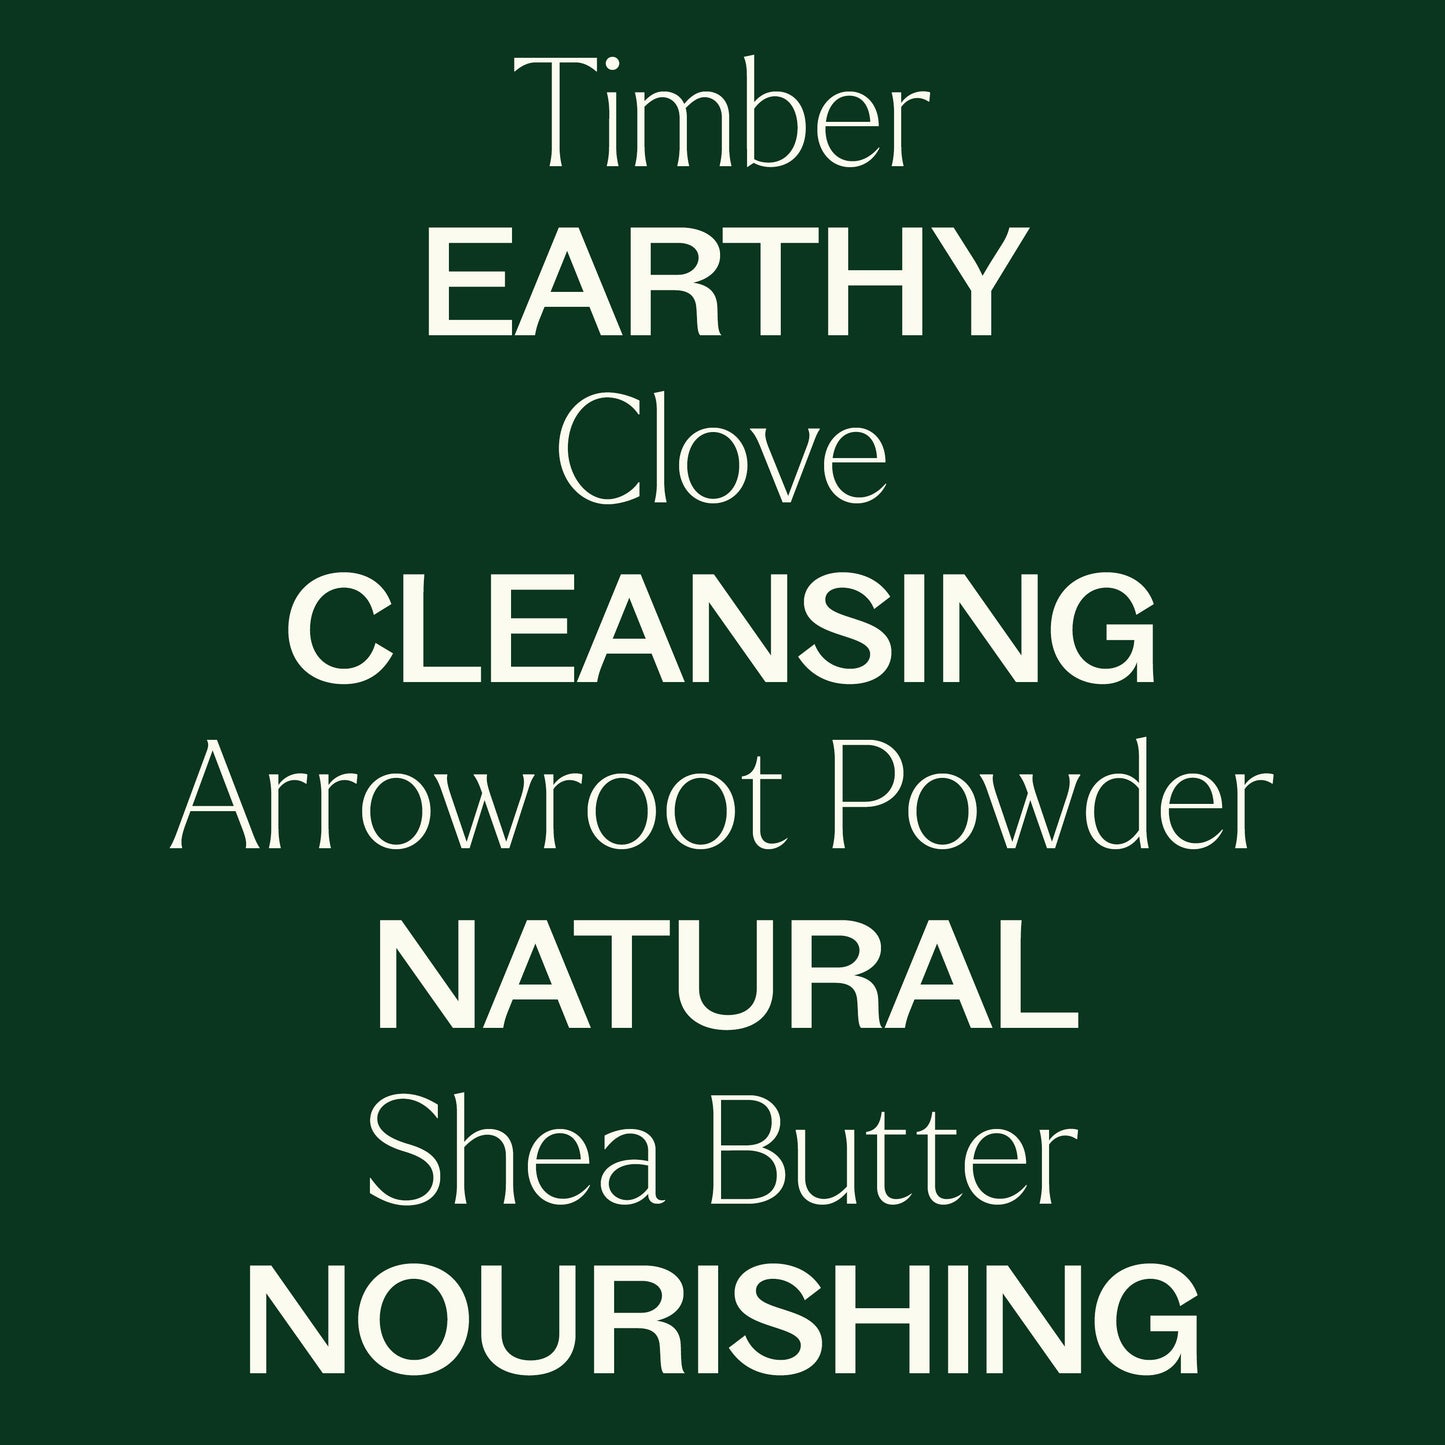 timber, clove, arrowroot powder, shea butter. Earthy, cleansing, natrual, nourishing